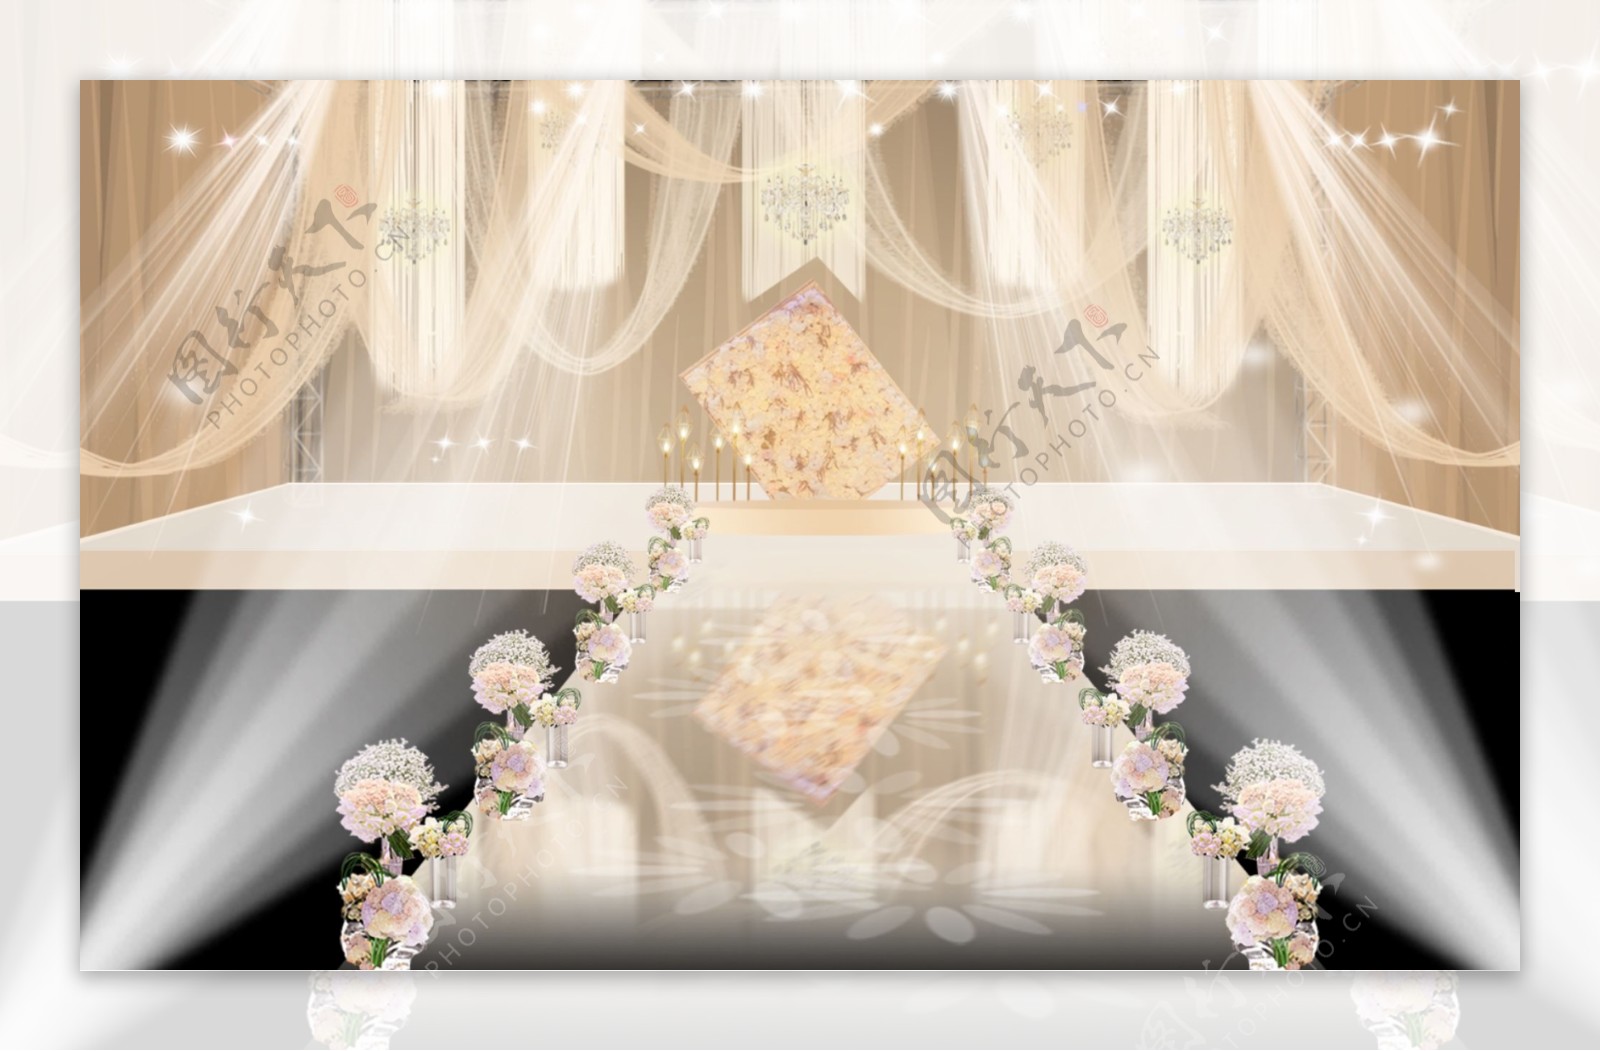 轻柔的浪漫 | 布幔与纱幔交织下的爱意缱绻 - 真实婚礼 - 婚礼风尚